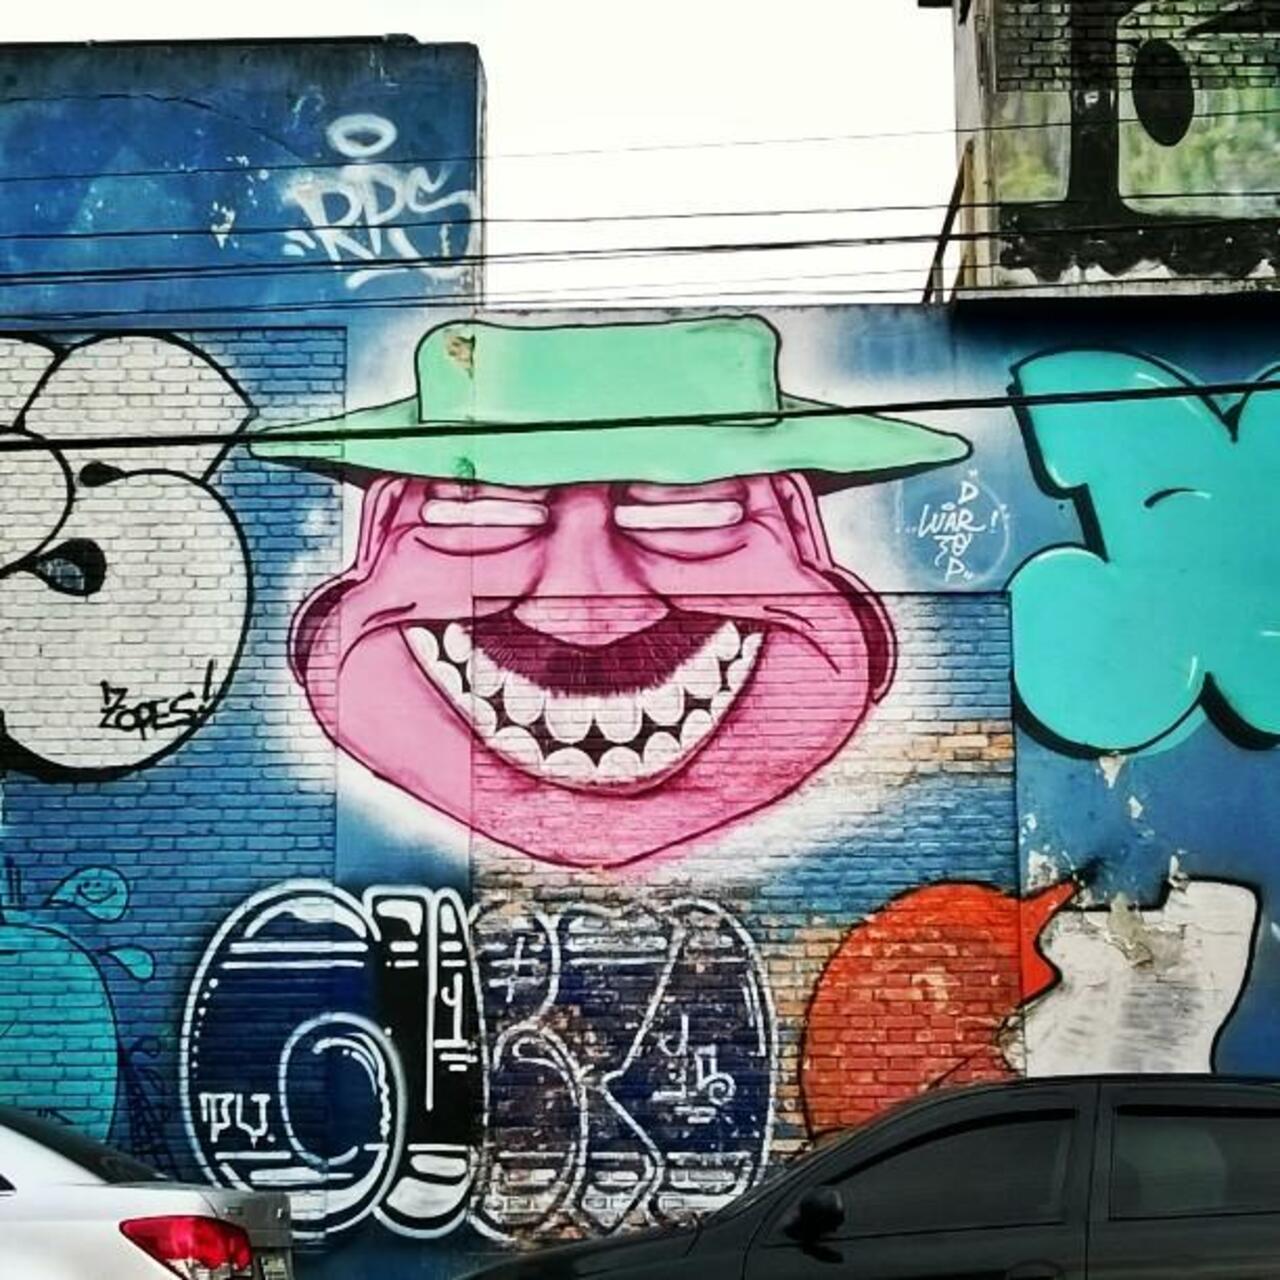 via #felippemanuella "http://bit.ly/1jTU75S" #graffiti #streetart http://t.co/Q04IQ6Qewr